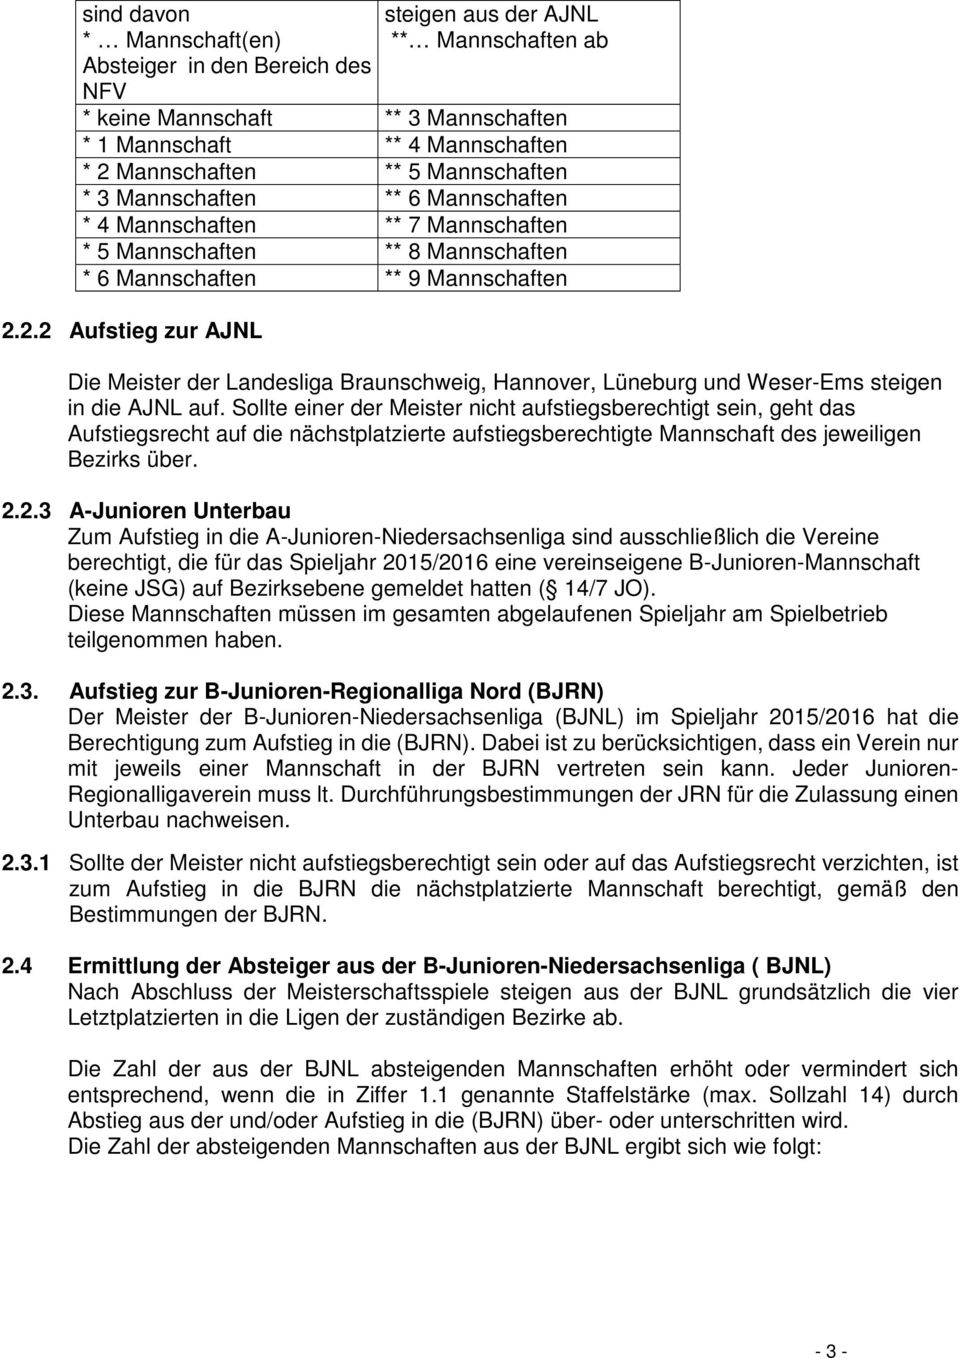 2.2 Aufstieg zur AJNL Die Meister der Landesliga Braunschweig, Hannover, Lüneburg und Weser-Ems steigen in die AJNL auf.